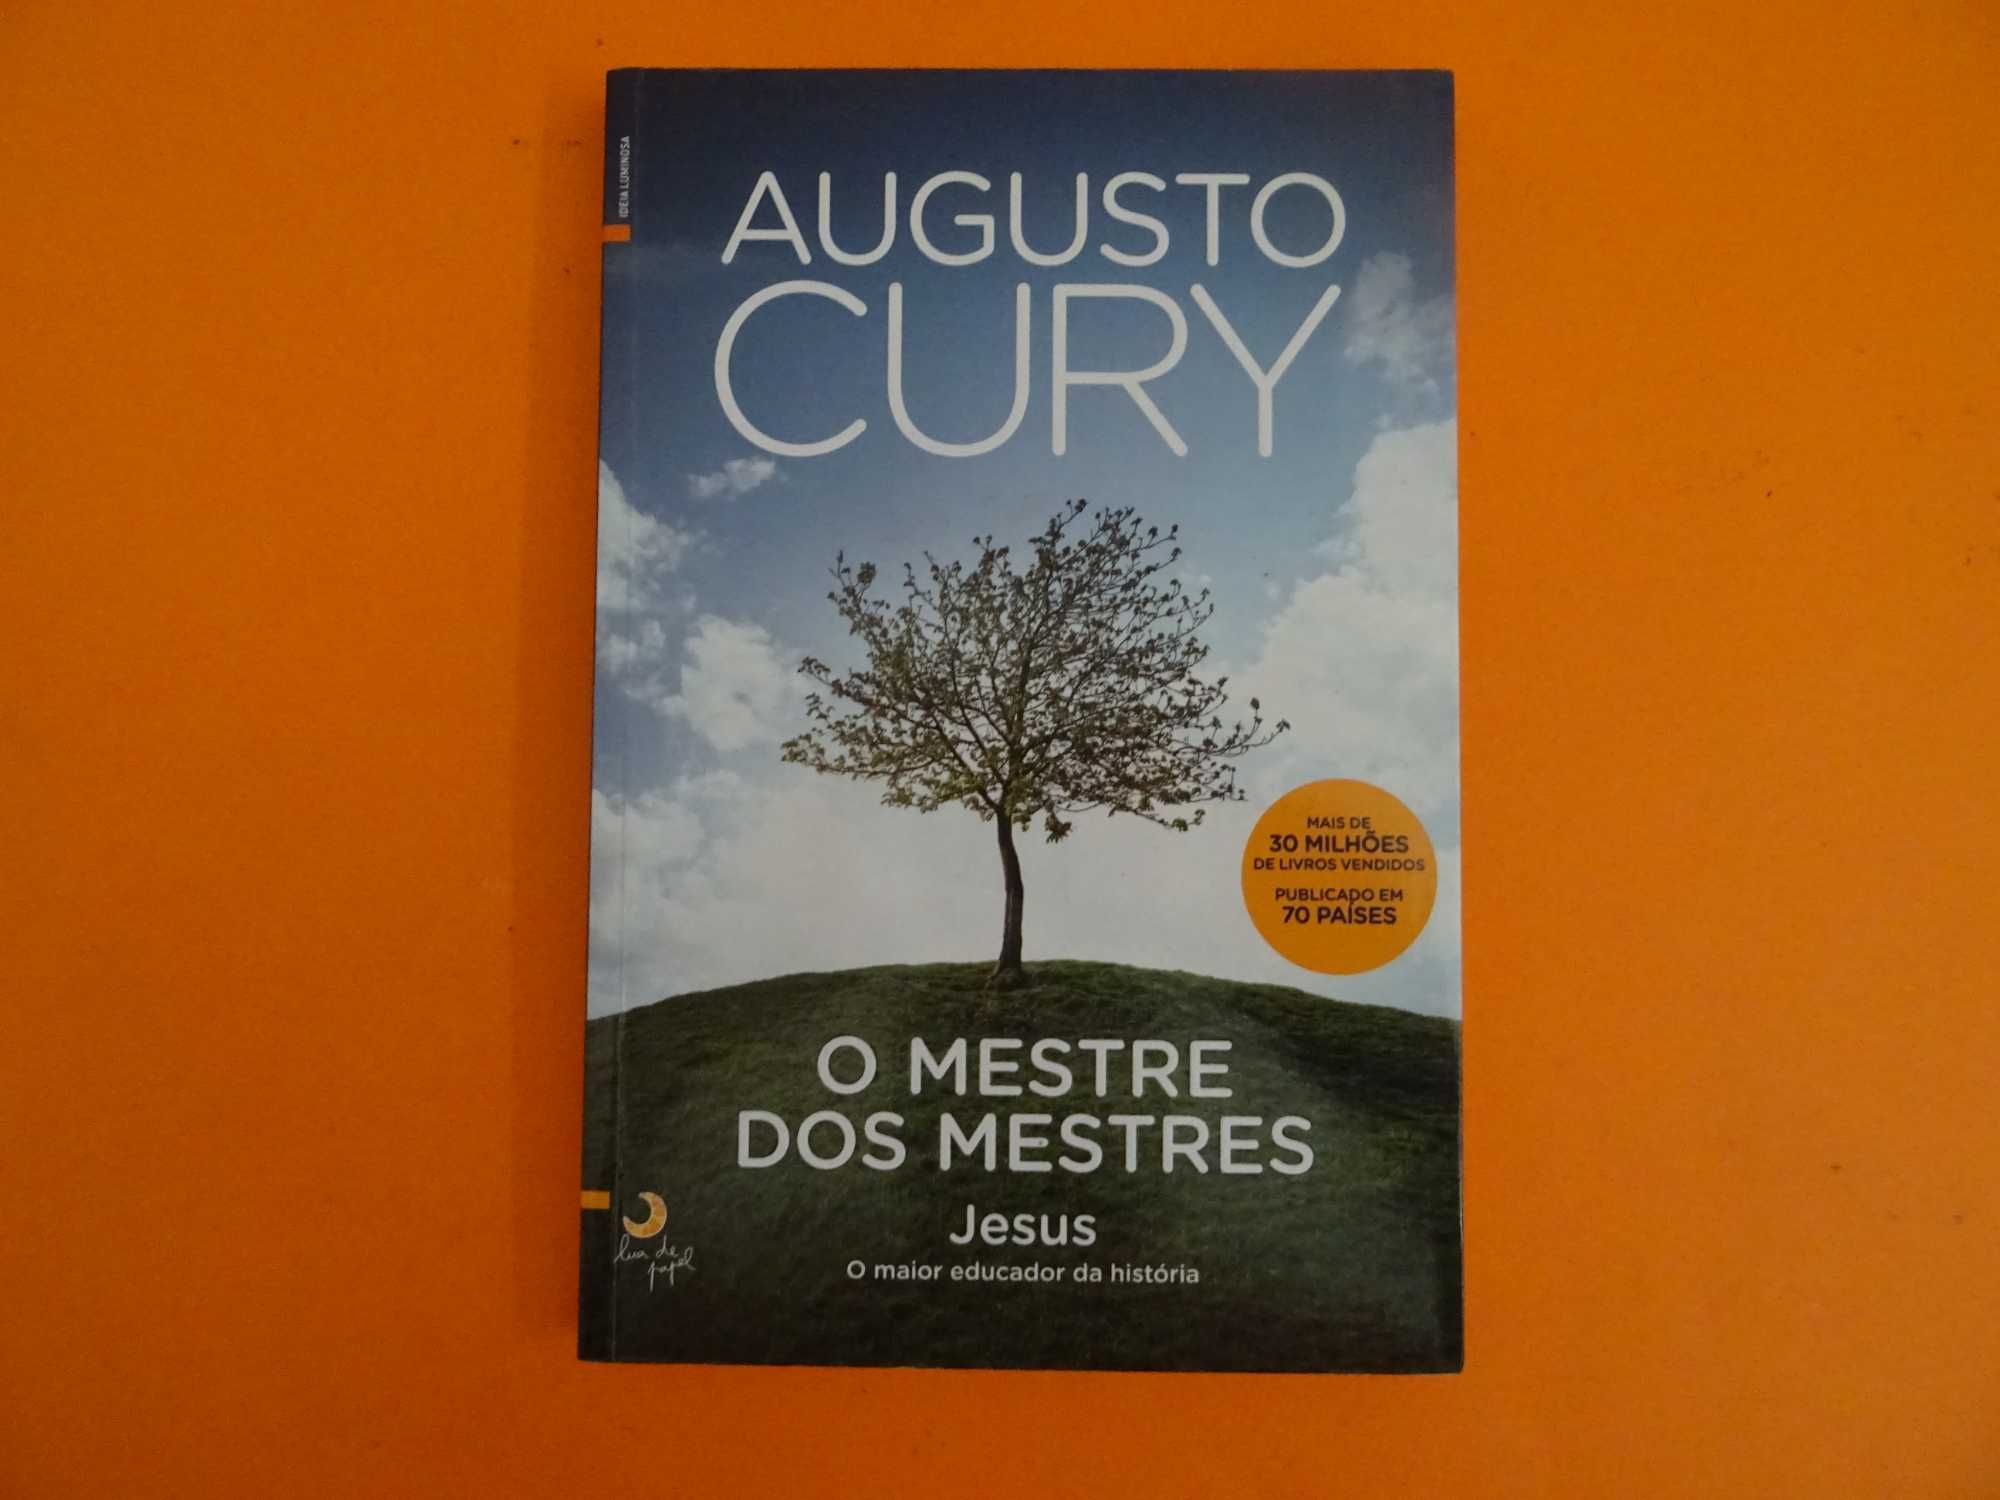 O mestre dos mestres - Augusto Cury